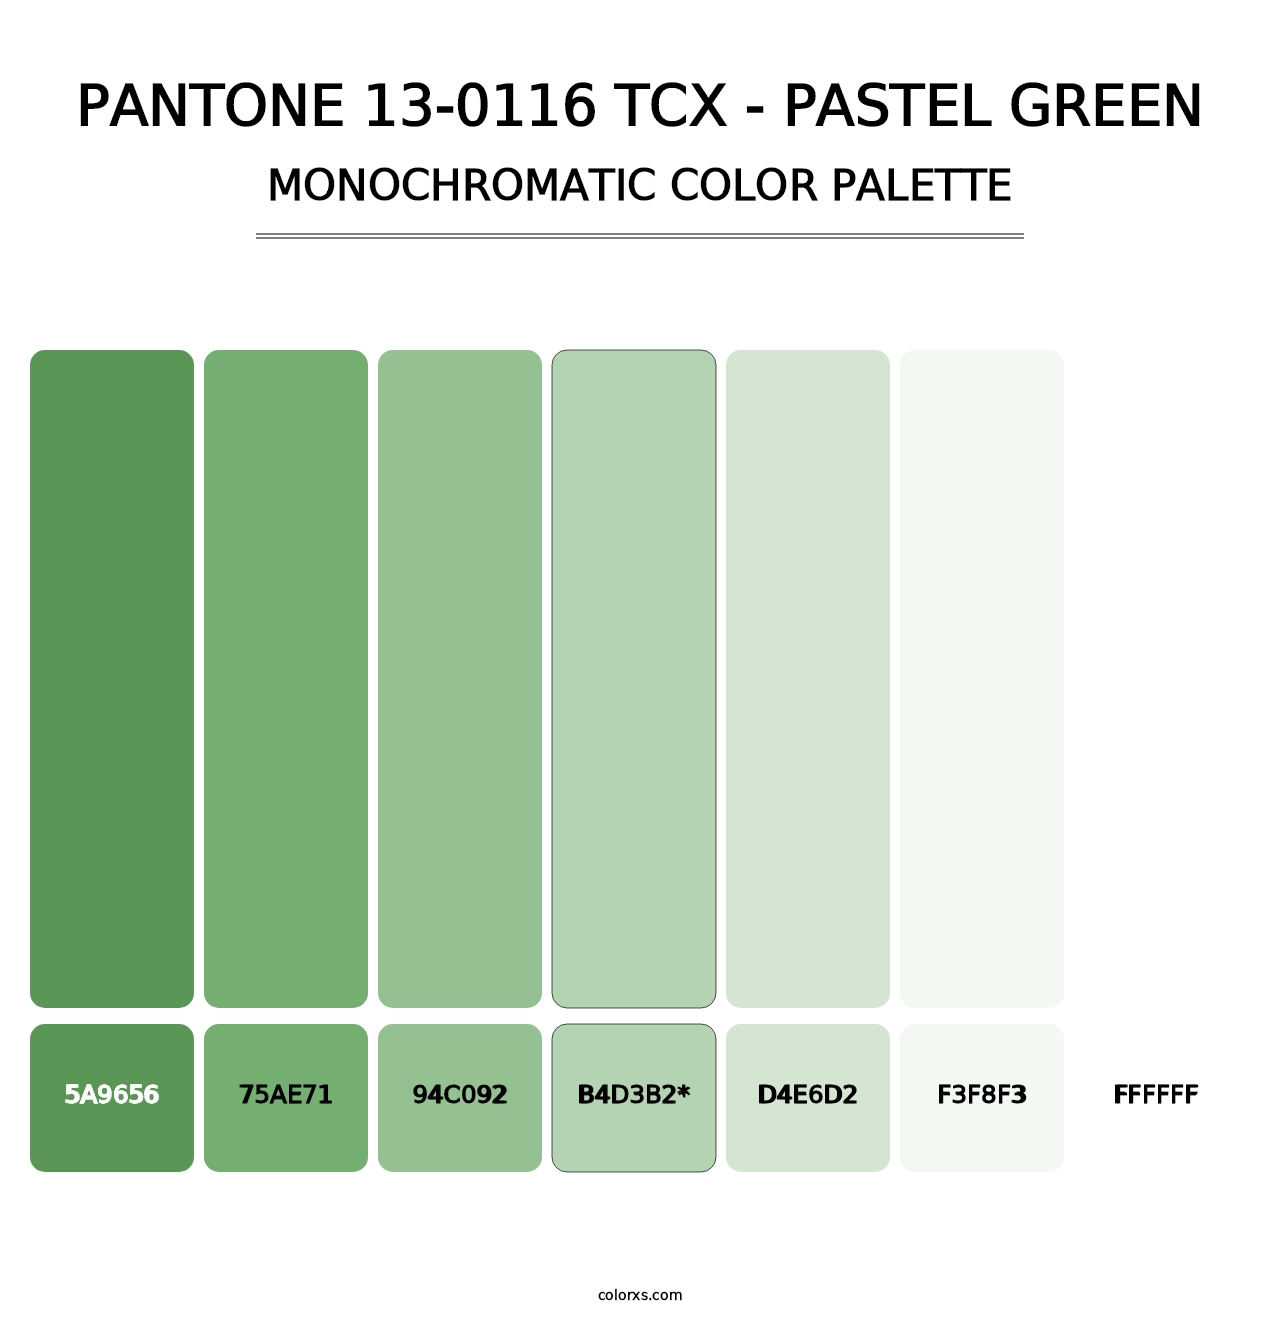 PANTONE 13-0116 TCX - Pastel Green - Monochromatic Color Palette